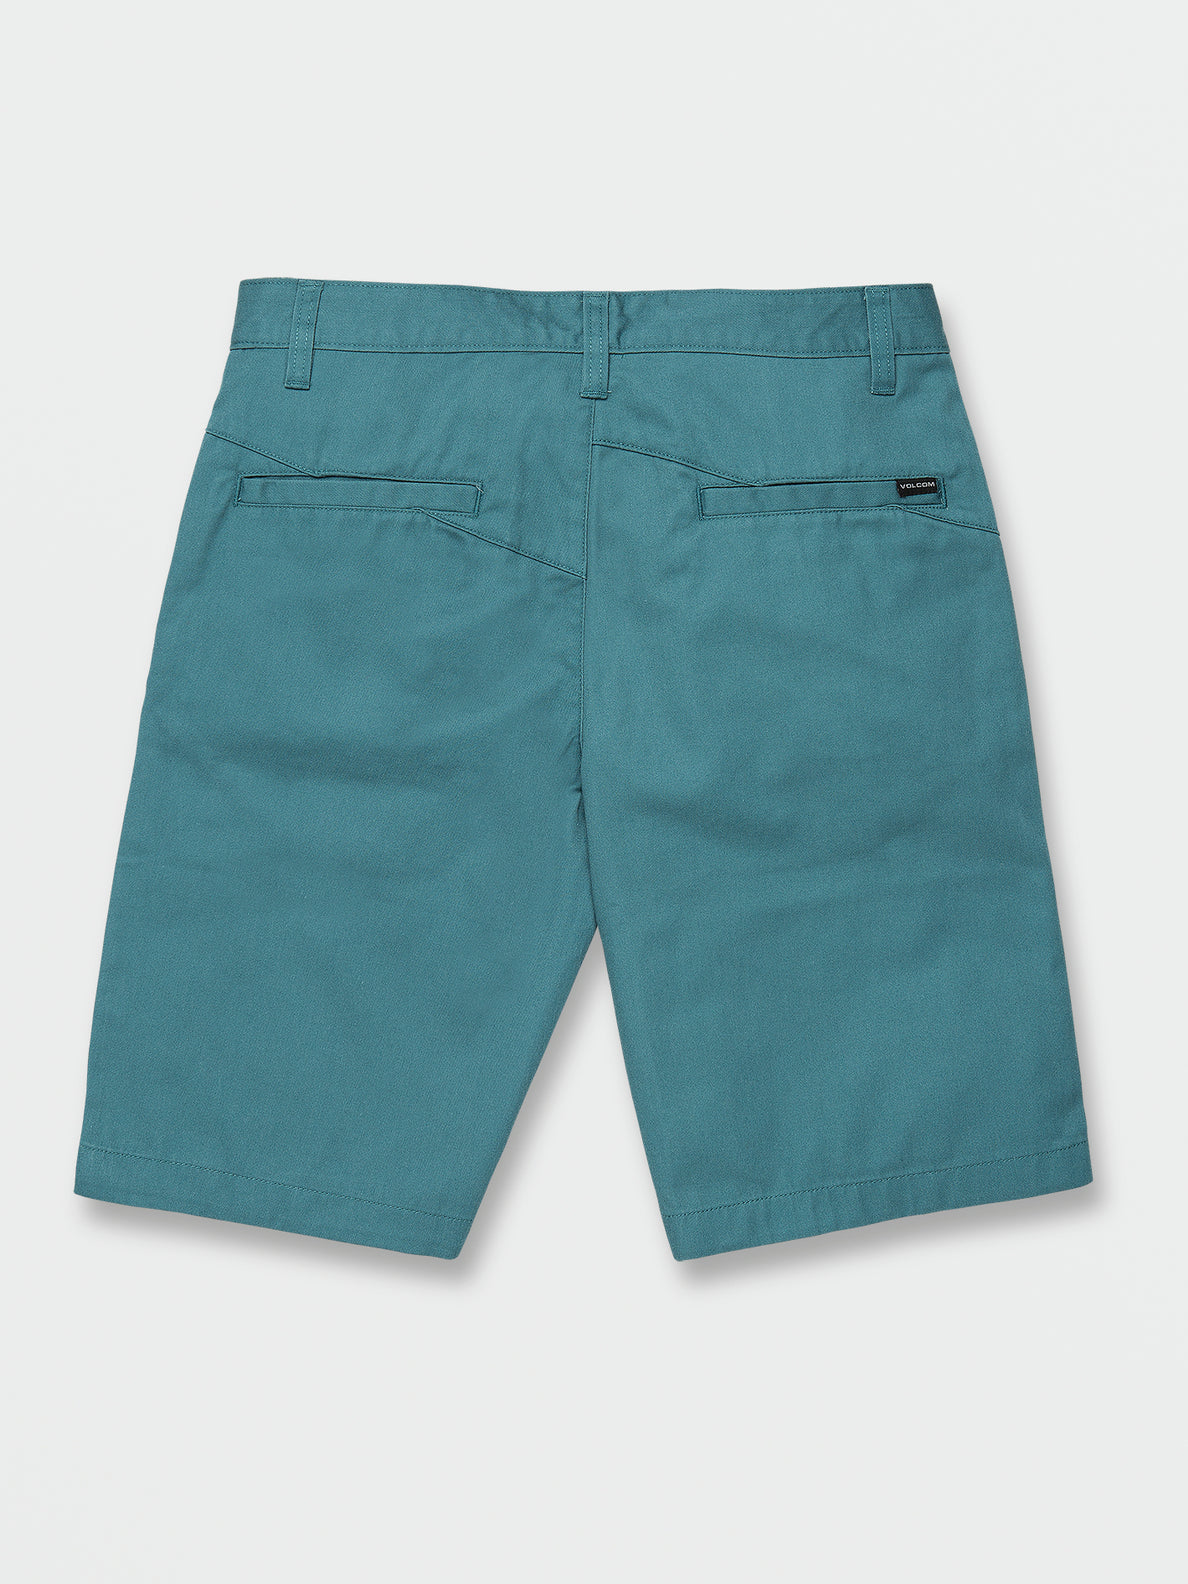 Vmonty Shorts - Hydro Blue